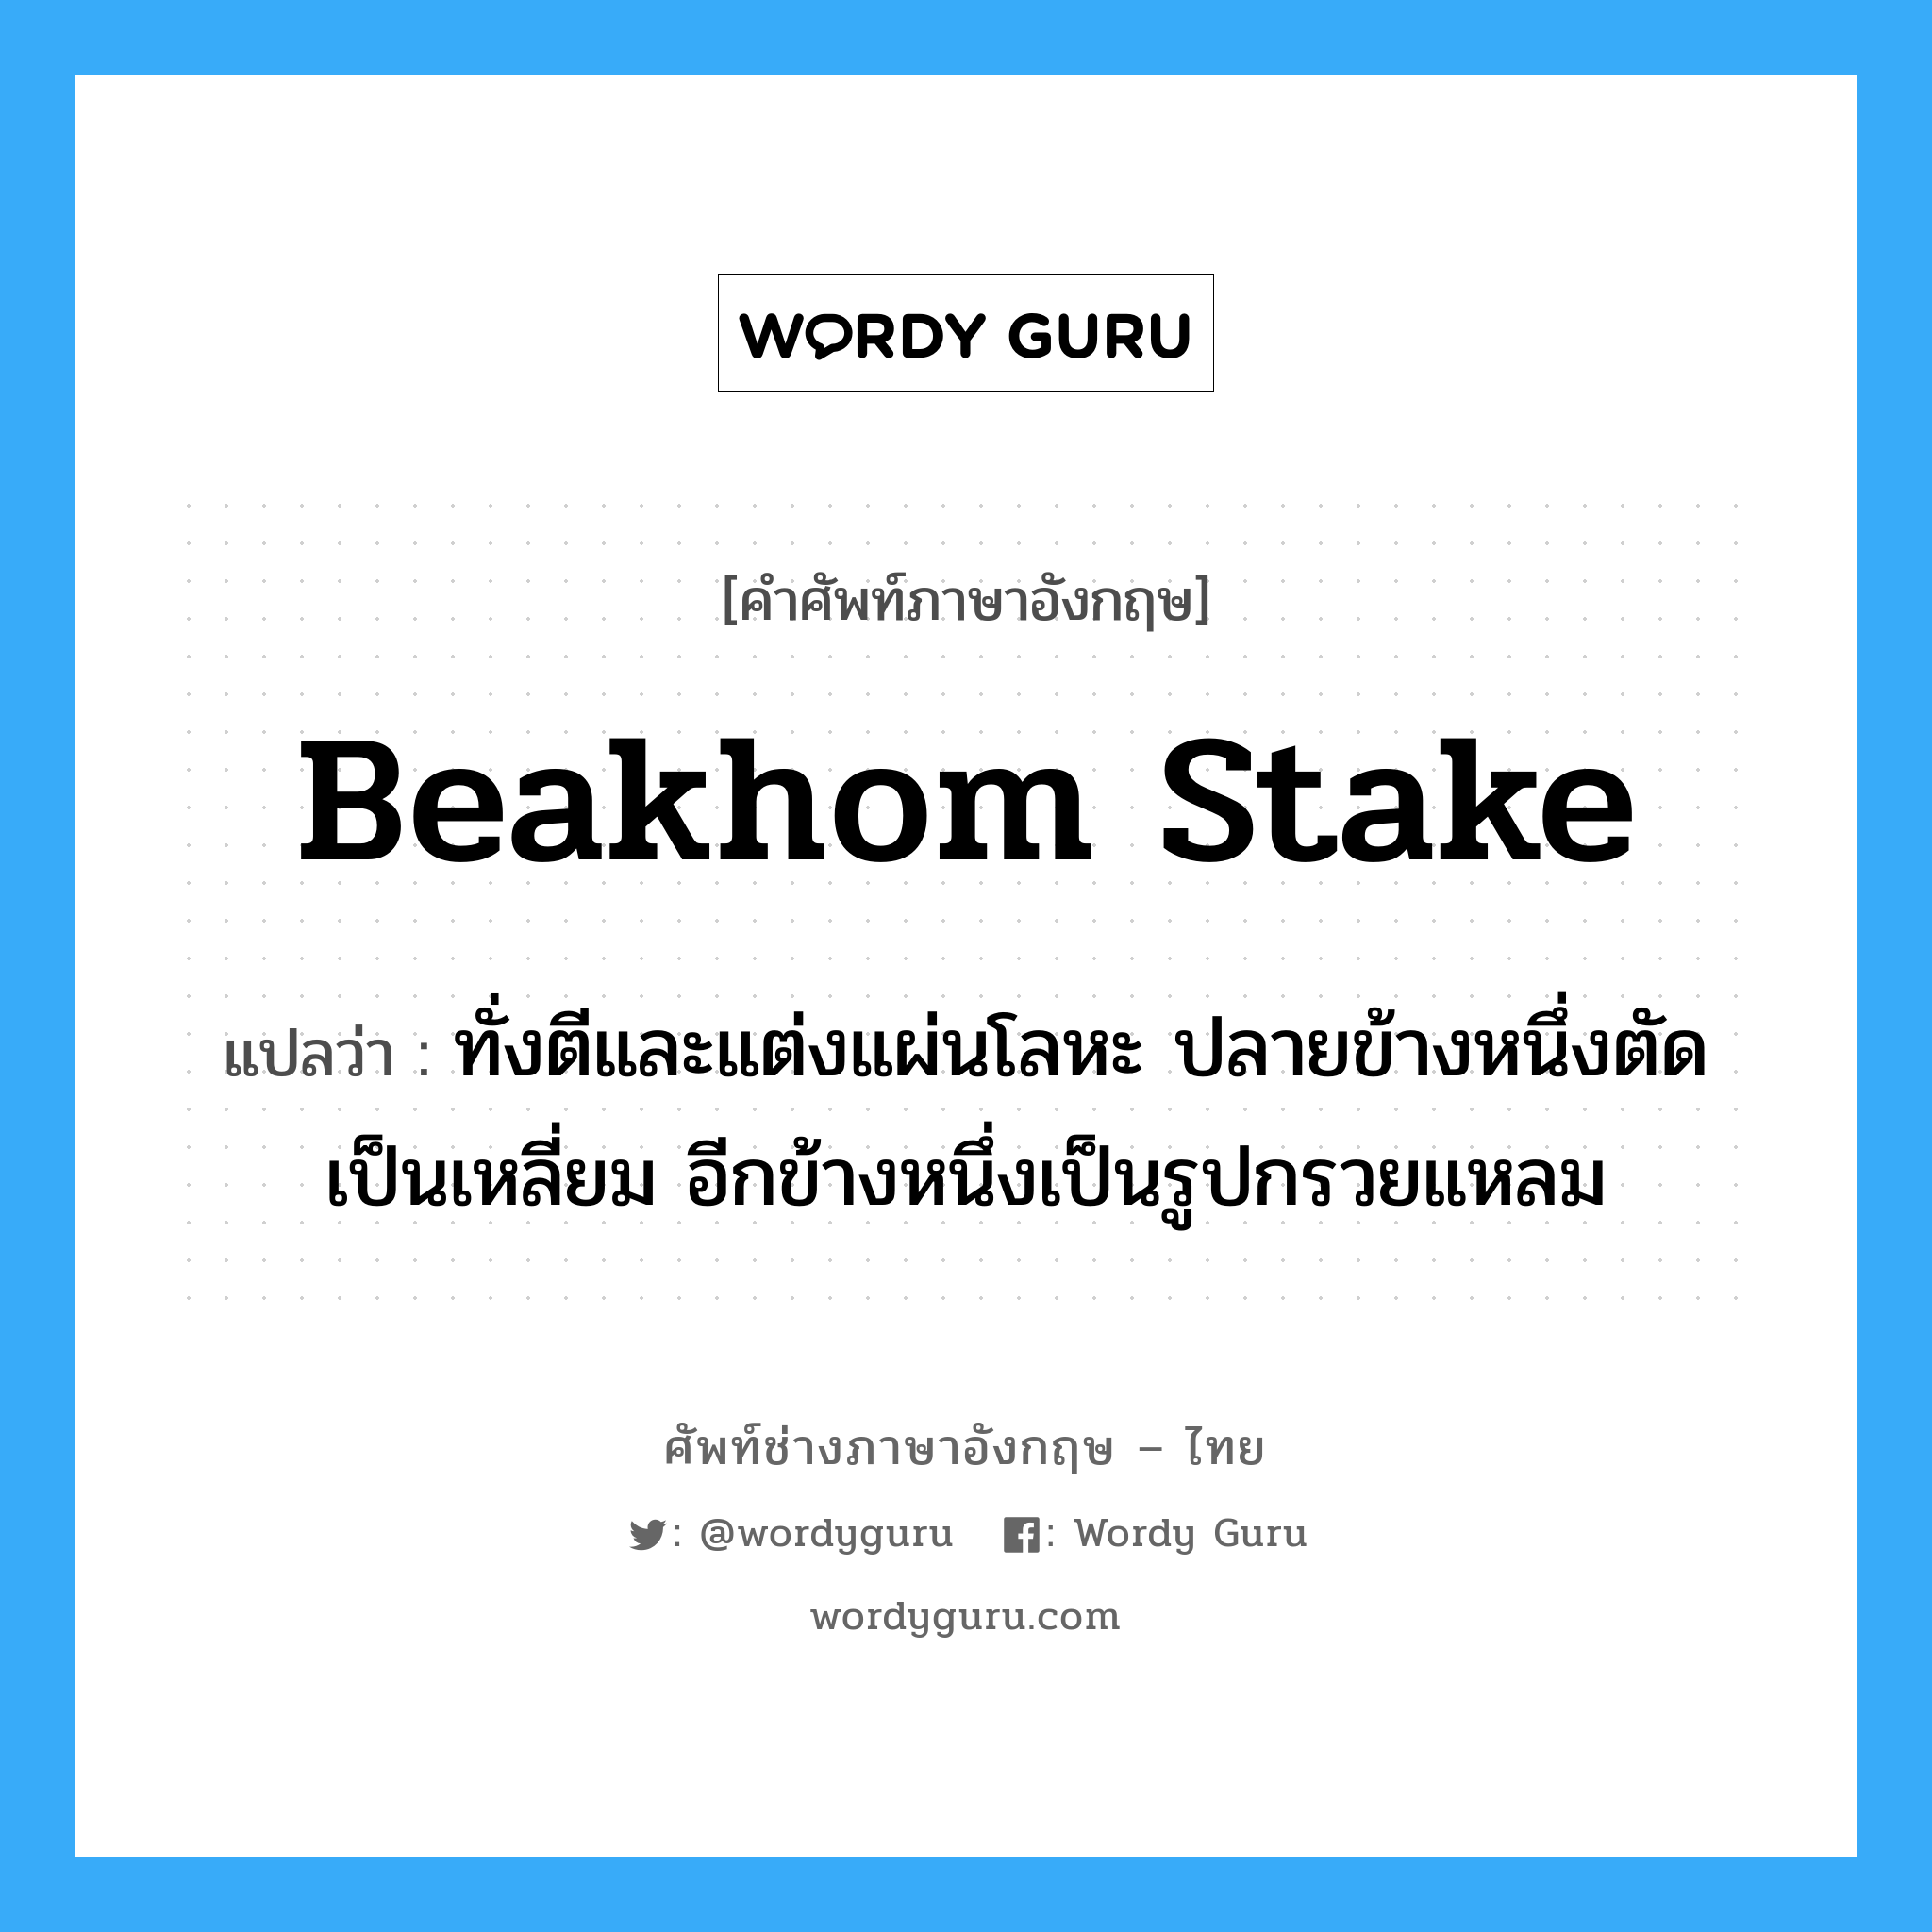 beakhom stake แปลว่า?, คำศัพท์ช่างภาษาอังกฤษ - ไทย beakhom stake คำศัพท์ภาษาอังกฤษ beakhom stake แปลว่า ทั่งตีและแต่งแผ่นโลหะ ปลายข้างหนึ่งตัดเป็นเหลี่ยม อีกข้างหนึ่งเป็นรูปกรวยแหลม